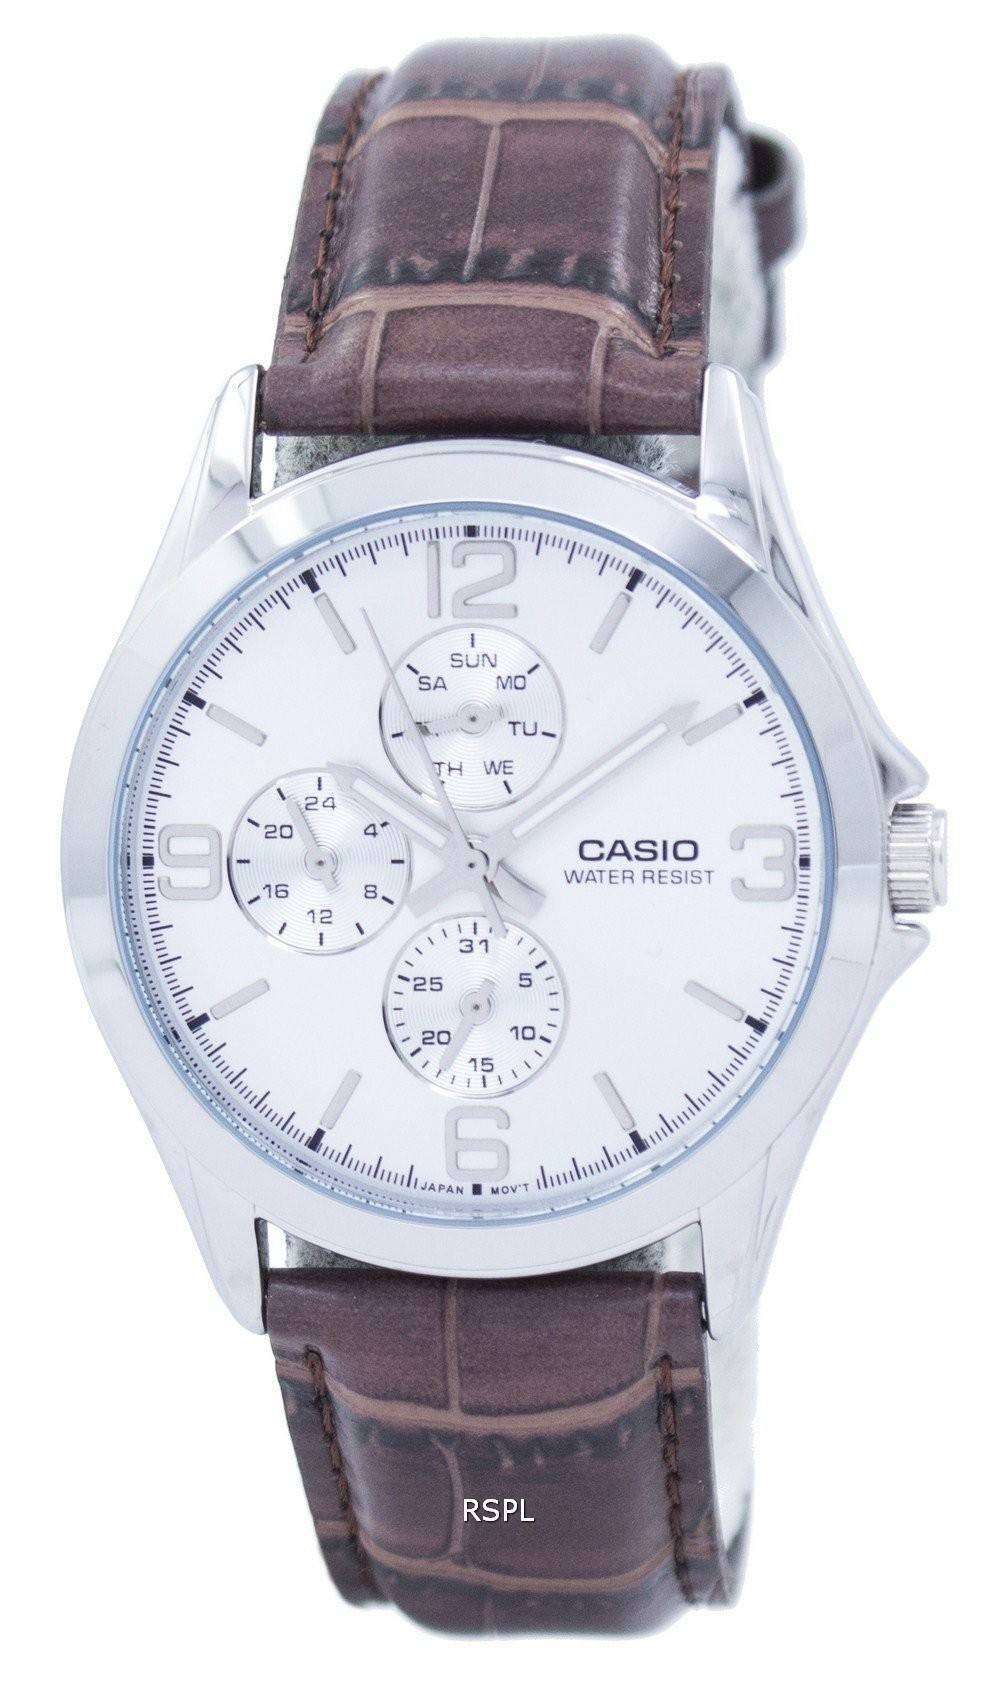 Khám phá đồng hồ Casio MTP-V301L-7AUDF